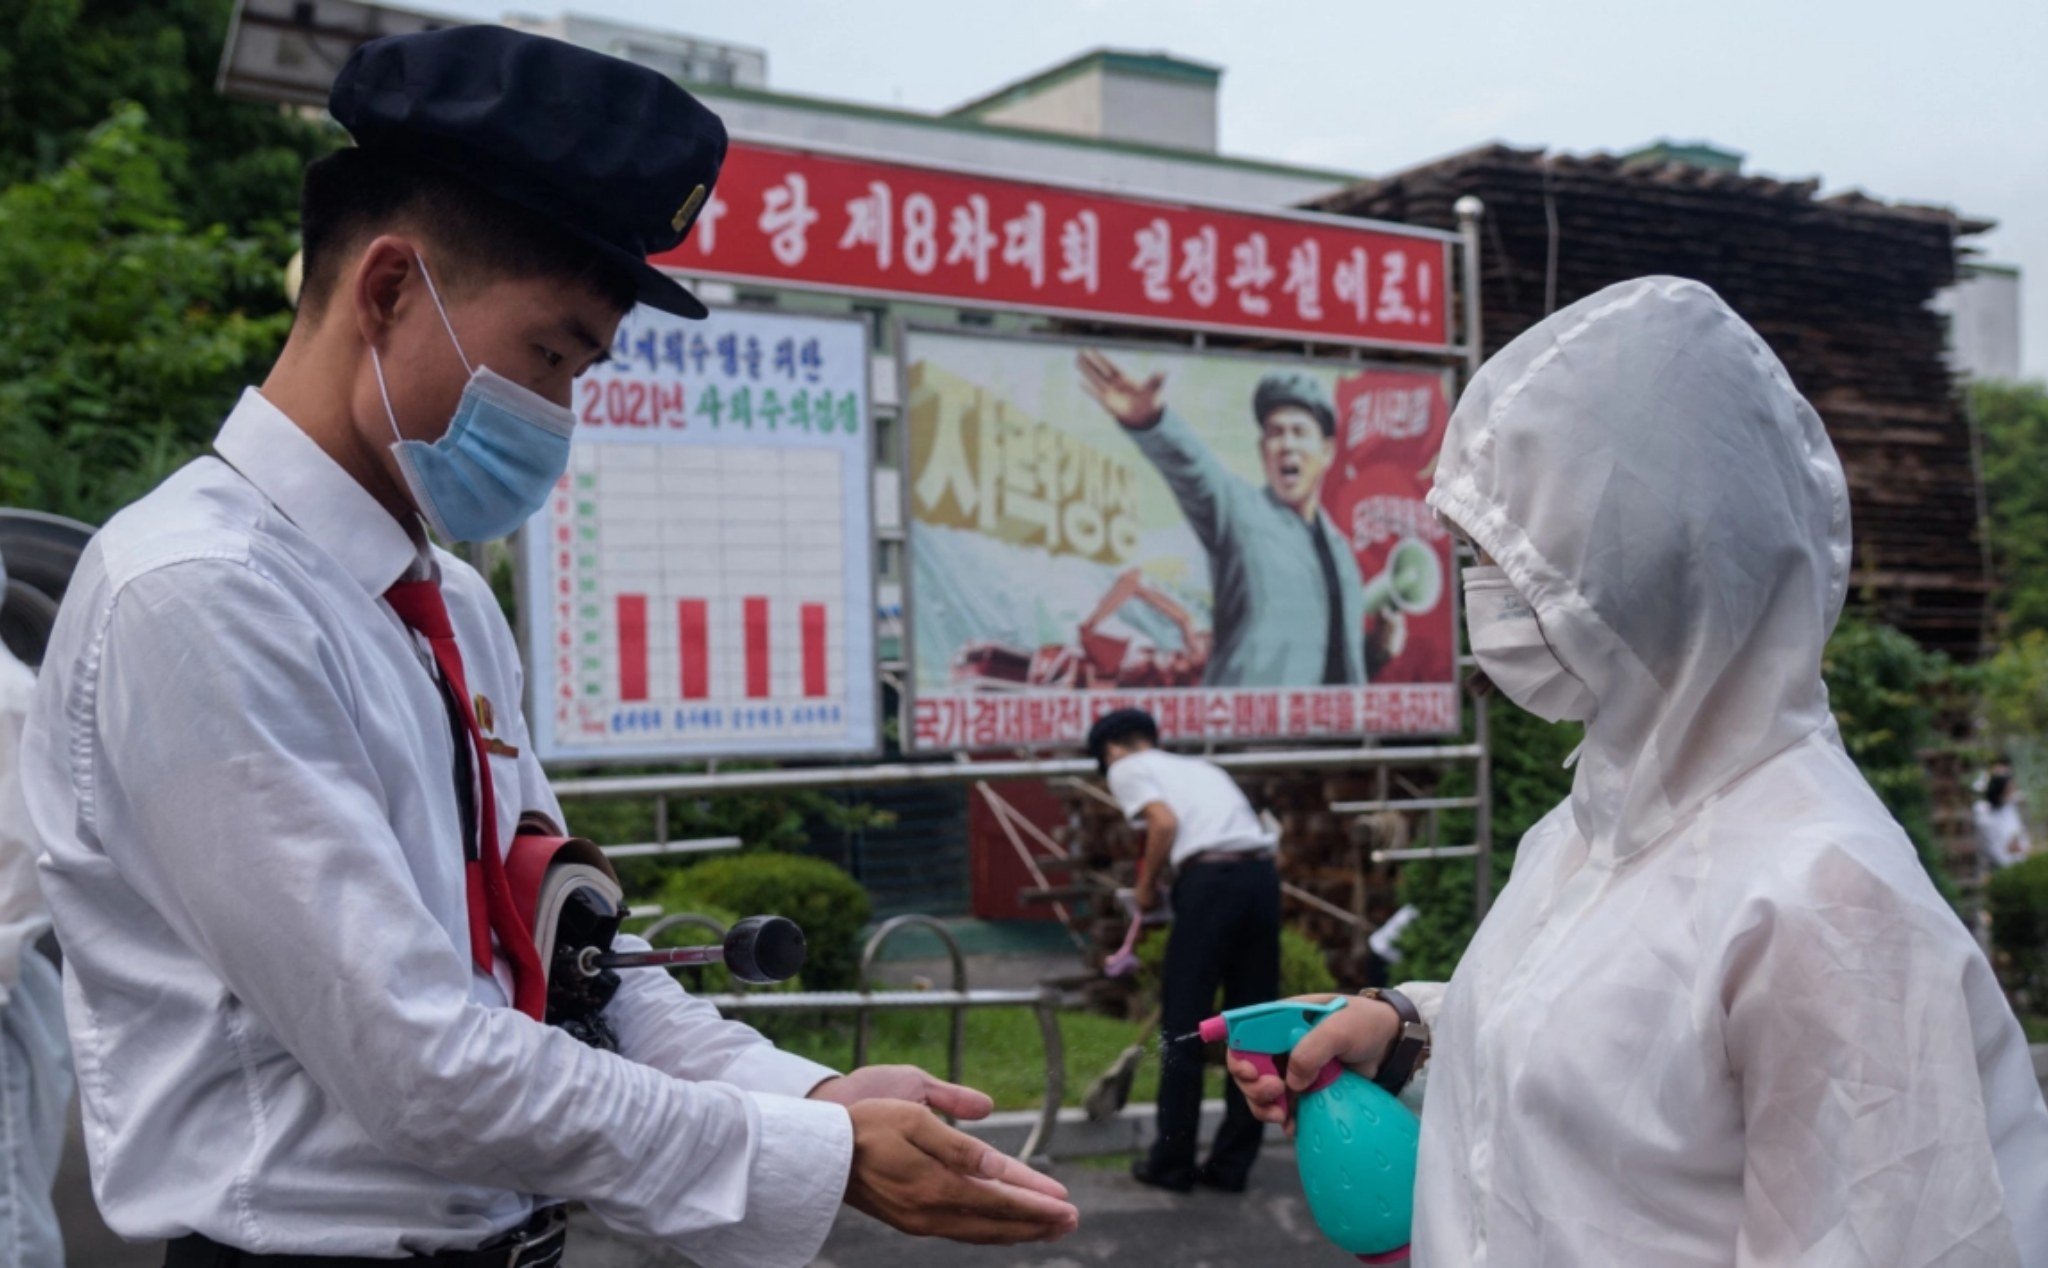 Bắc Triều Tiên thêm nhiều trường hợp tử vong do "sốt", chưa chính thức báo dịch bùng phát cho WHO